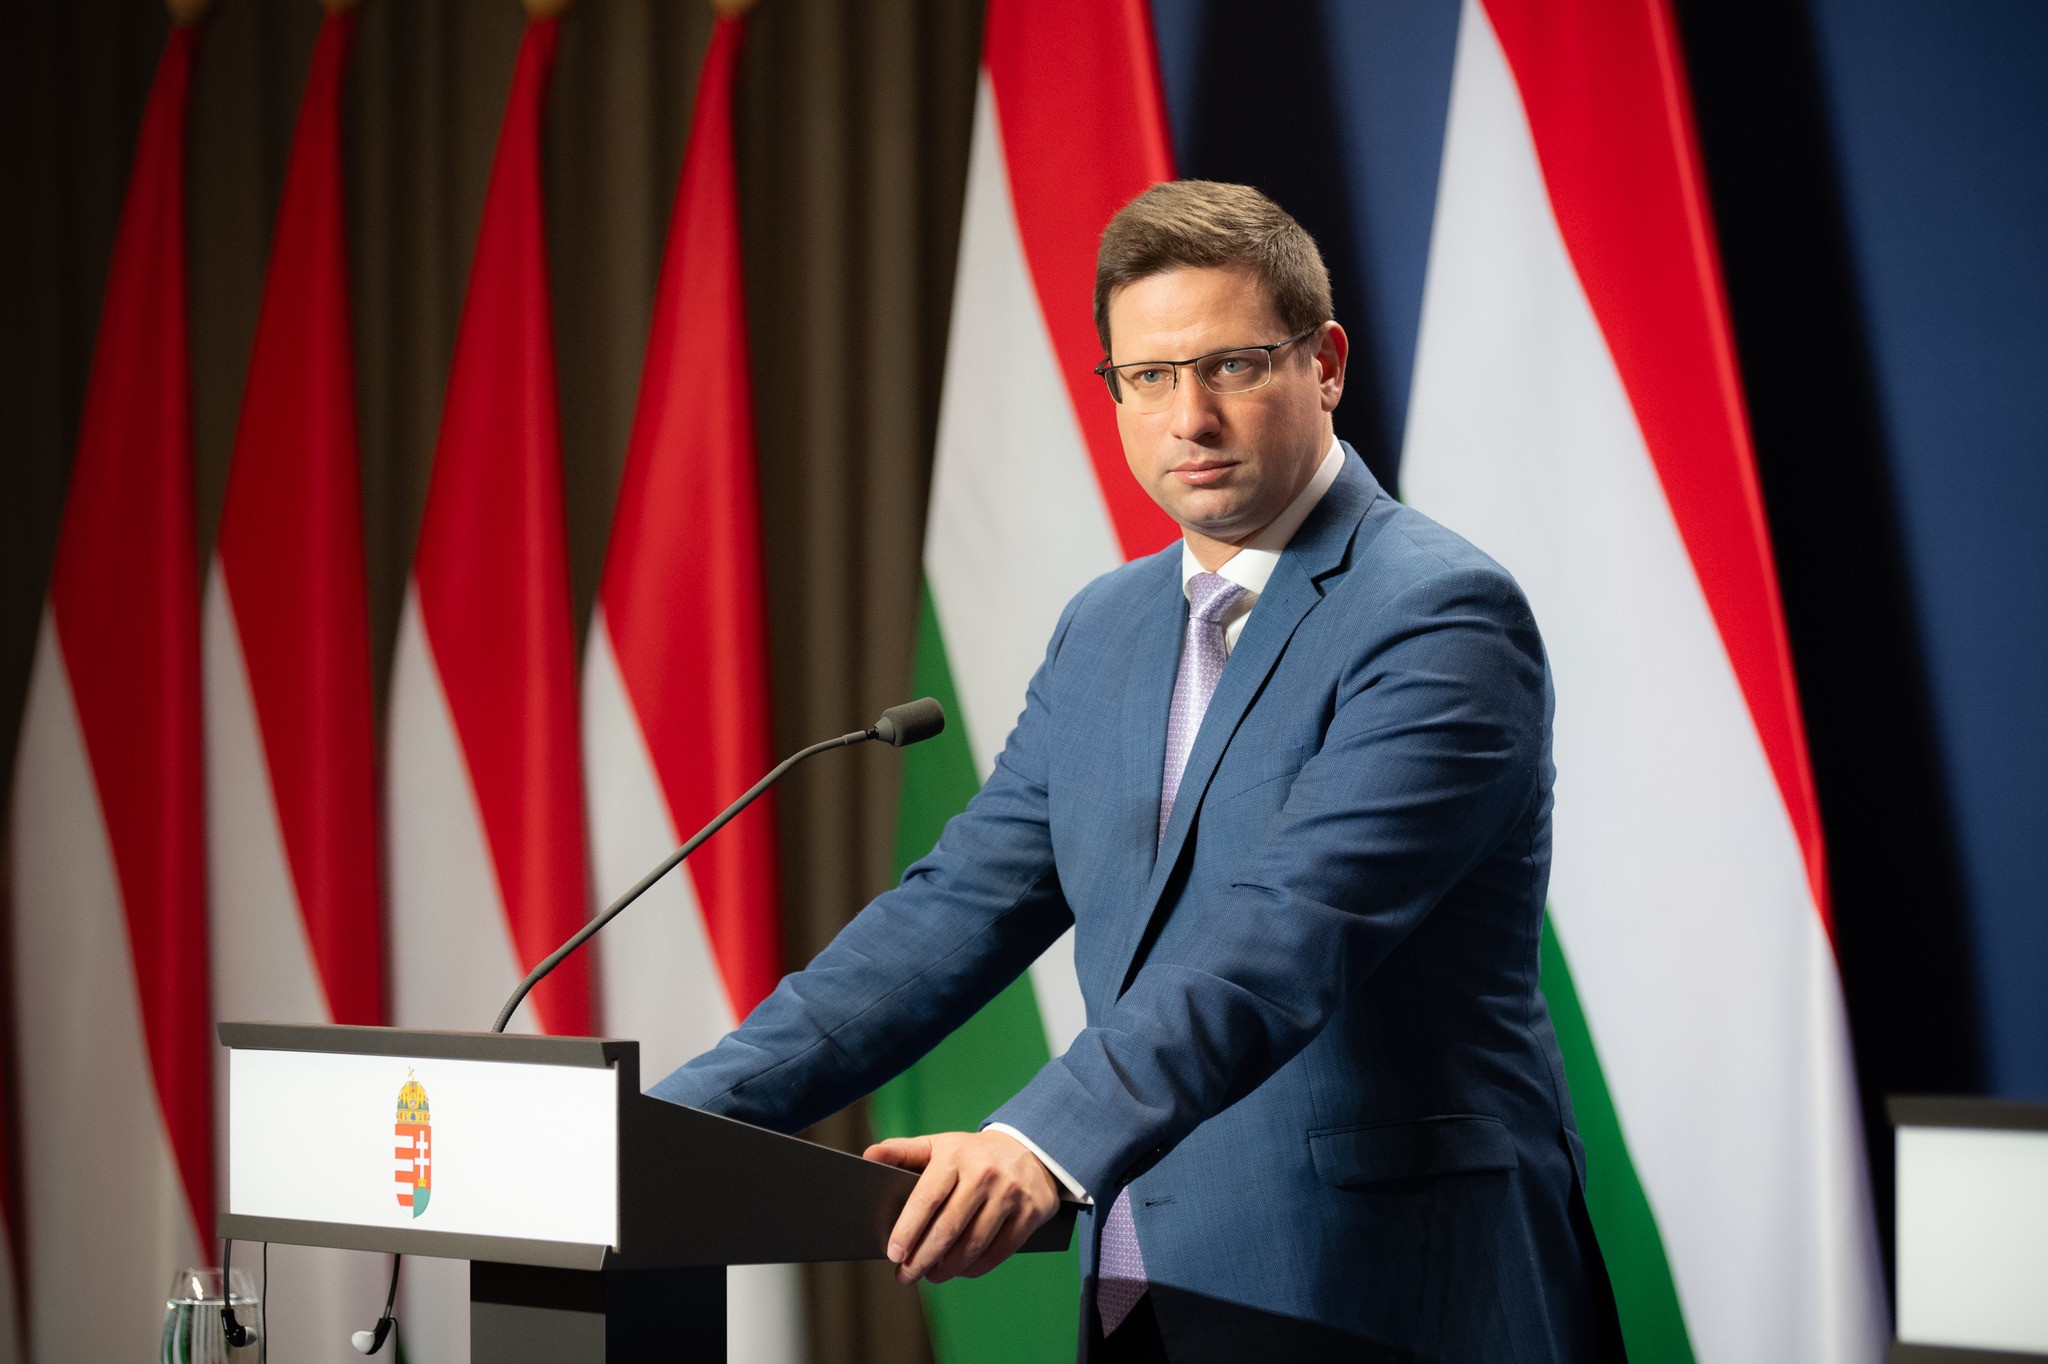 Kormányinfó: Elkaszálta Magyarországot az Európai Bíróság, a háború miatt aggódik a kormány 